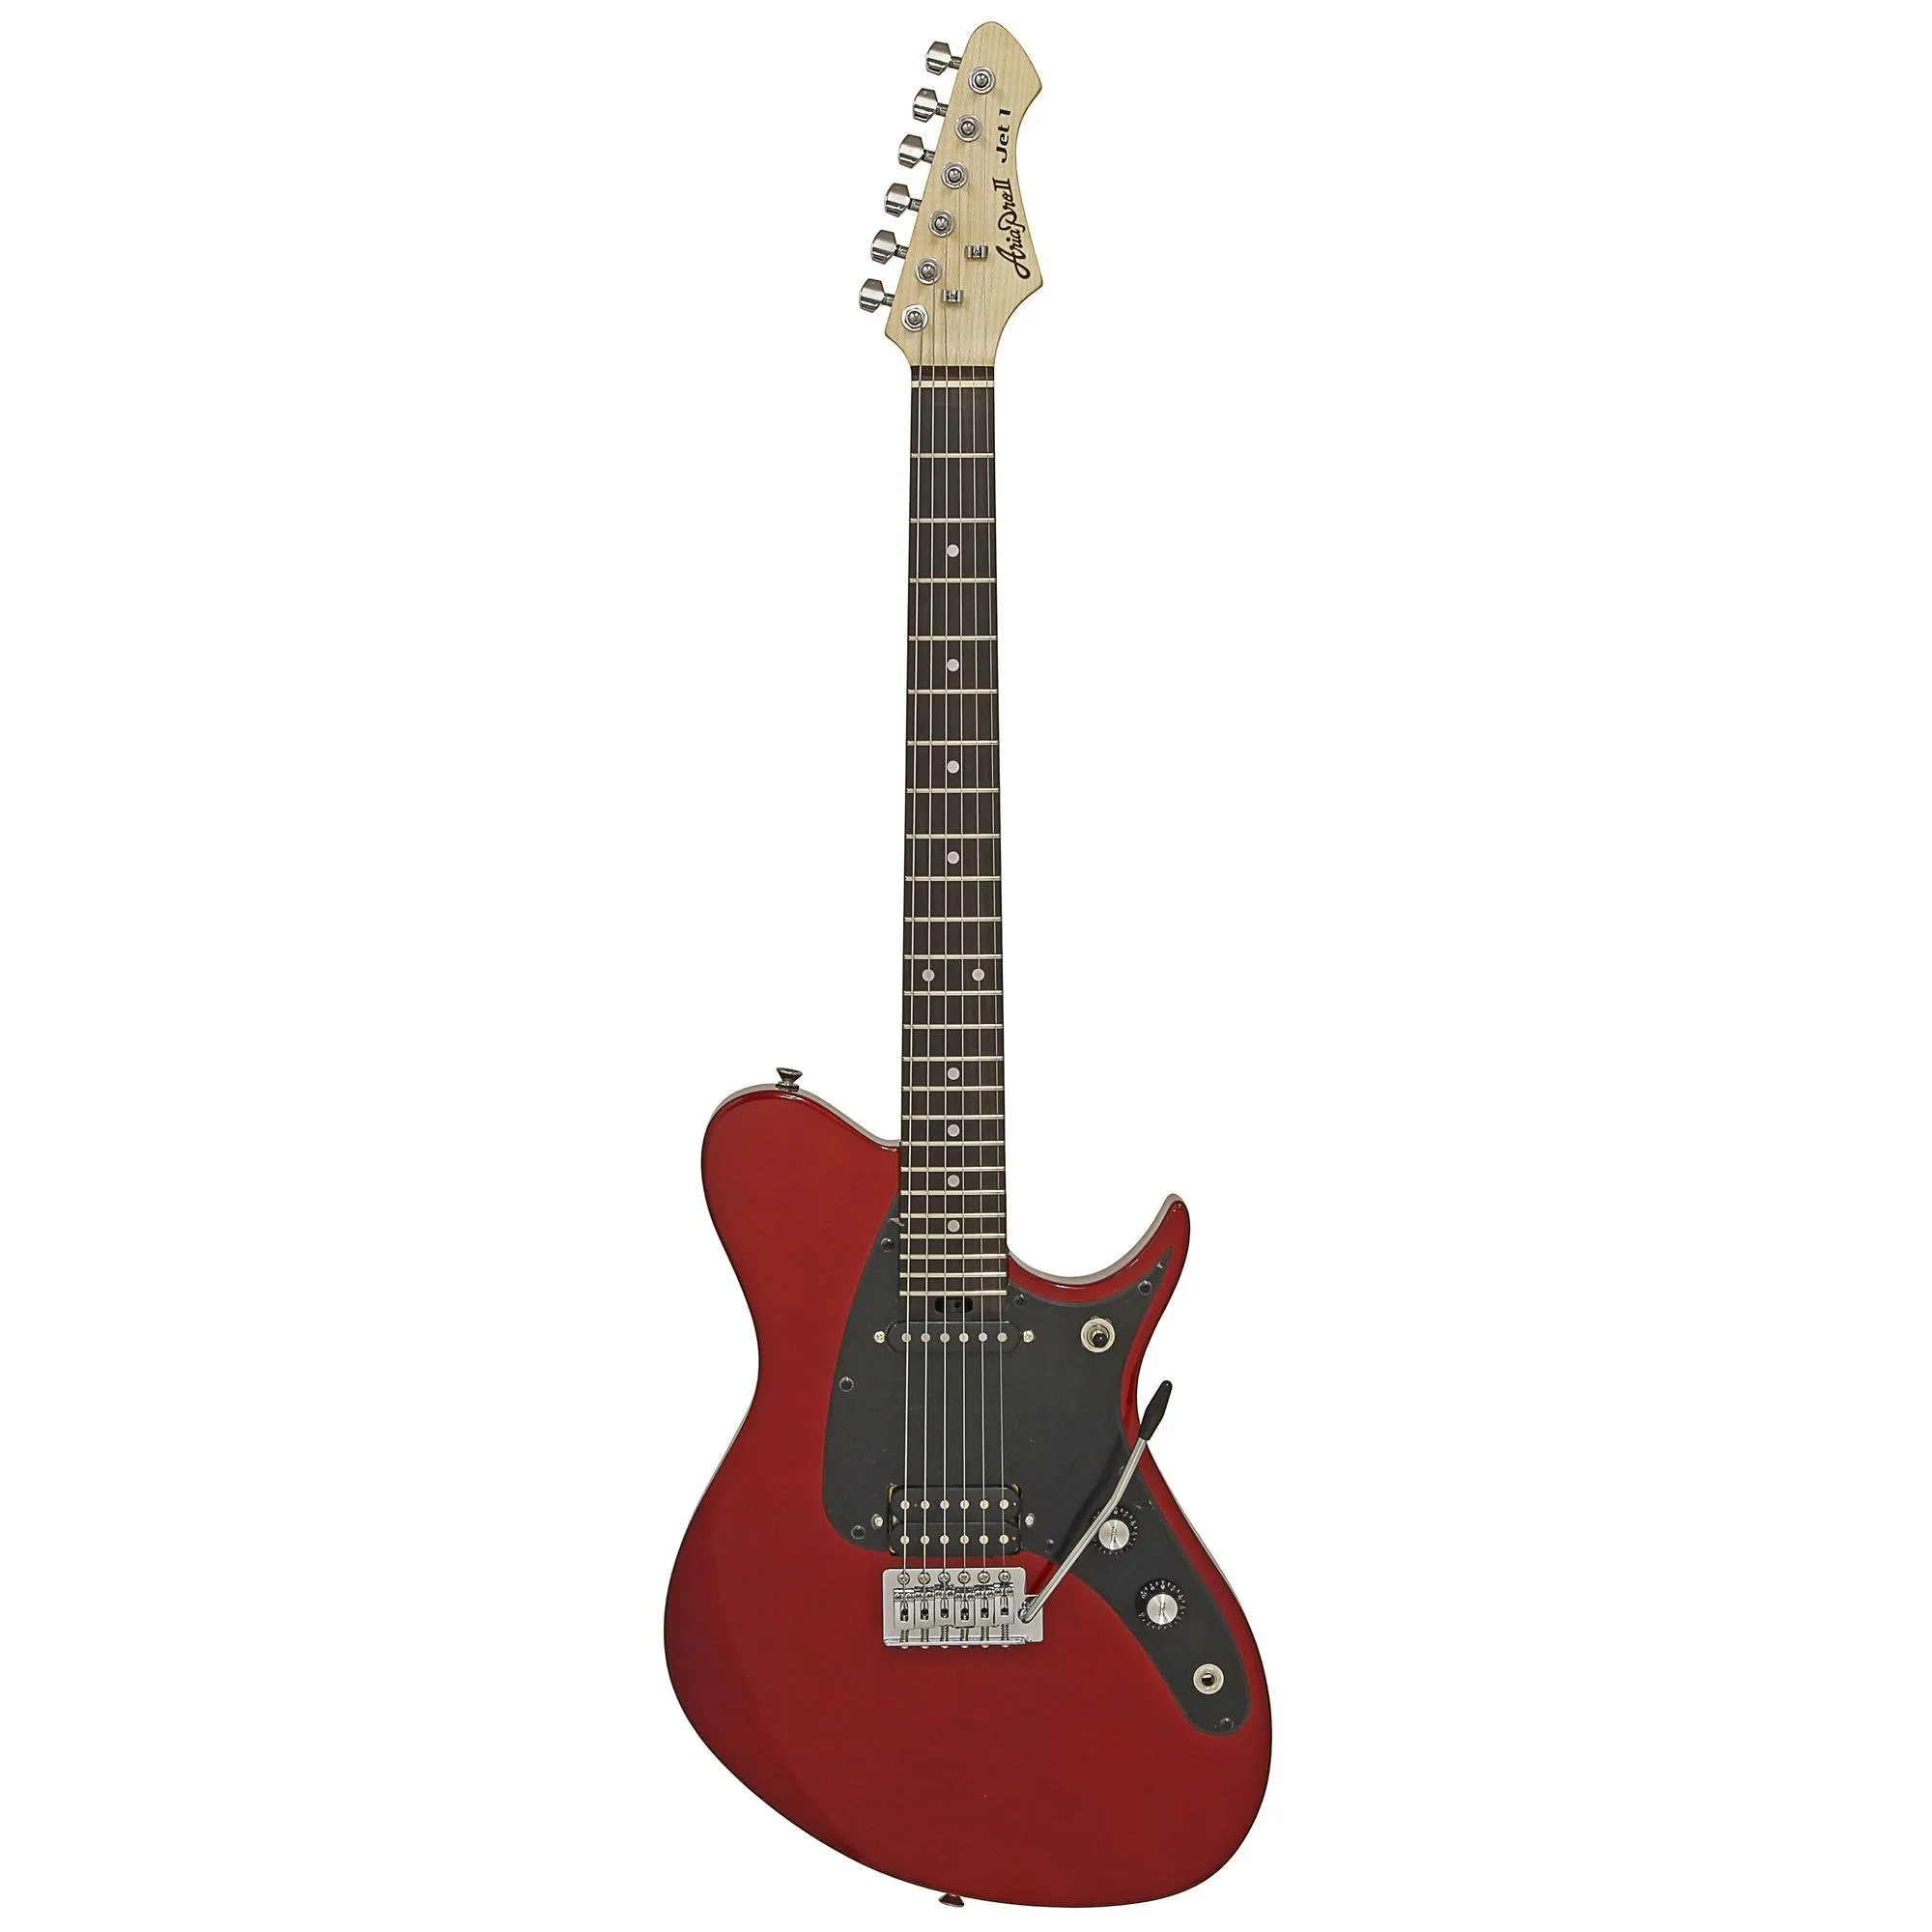 Guitarra Aria J-1 Candy Apple Red por 2.151,00 à vista no boleto/pix ou parcele em até 12x sem juros. Compre na loja Mundomax!